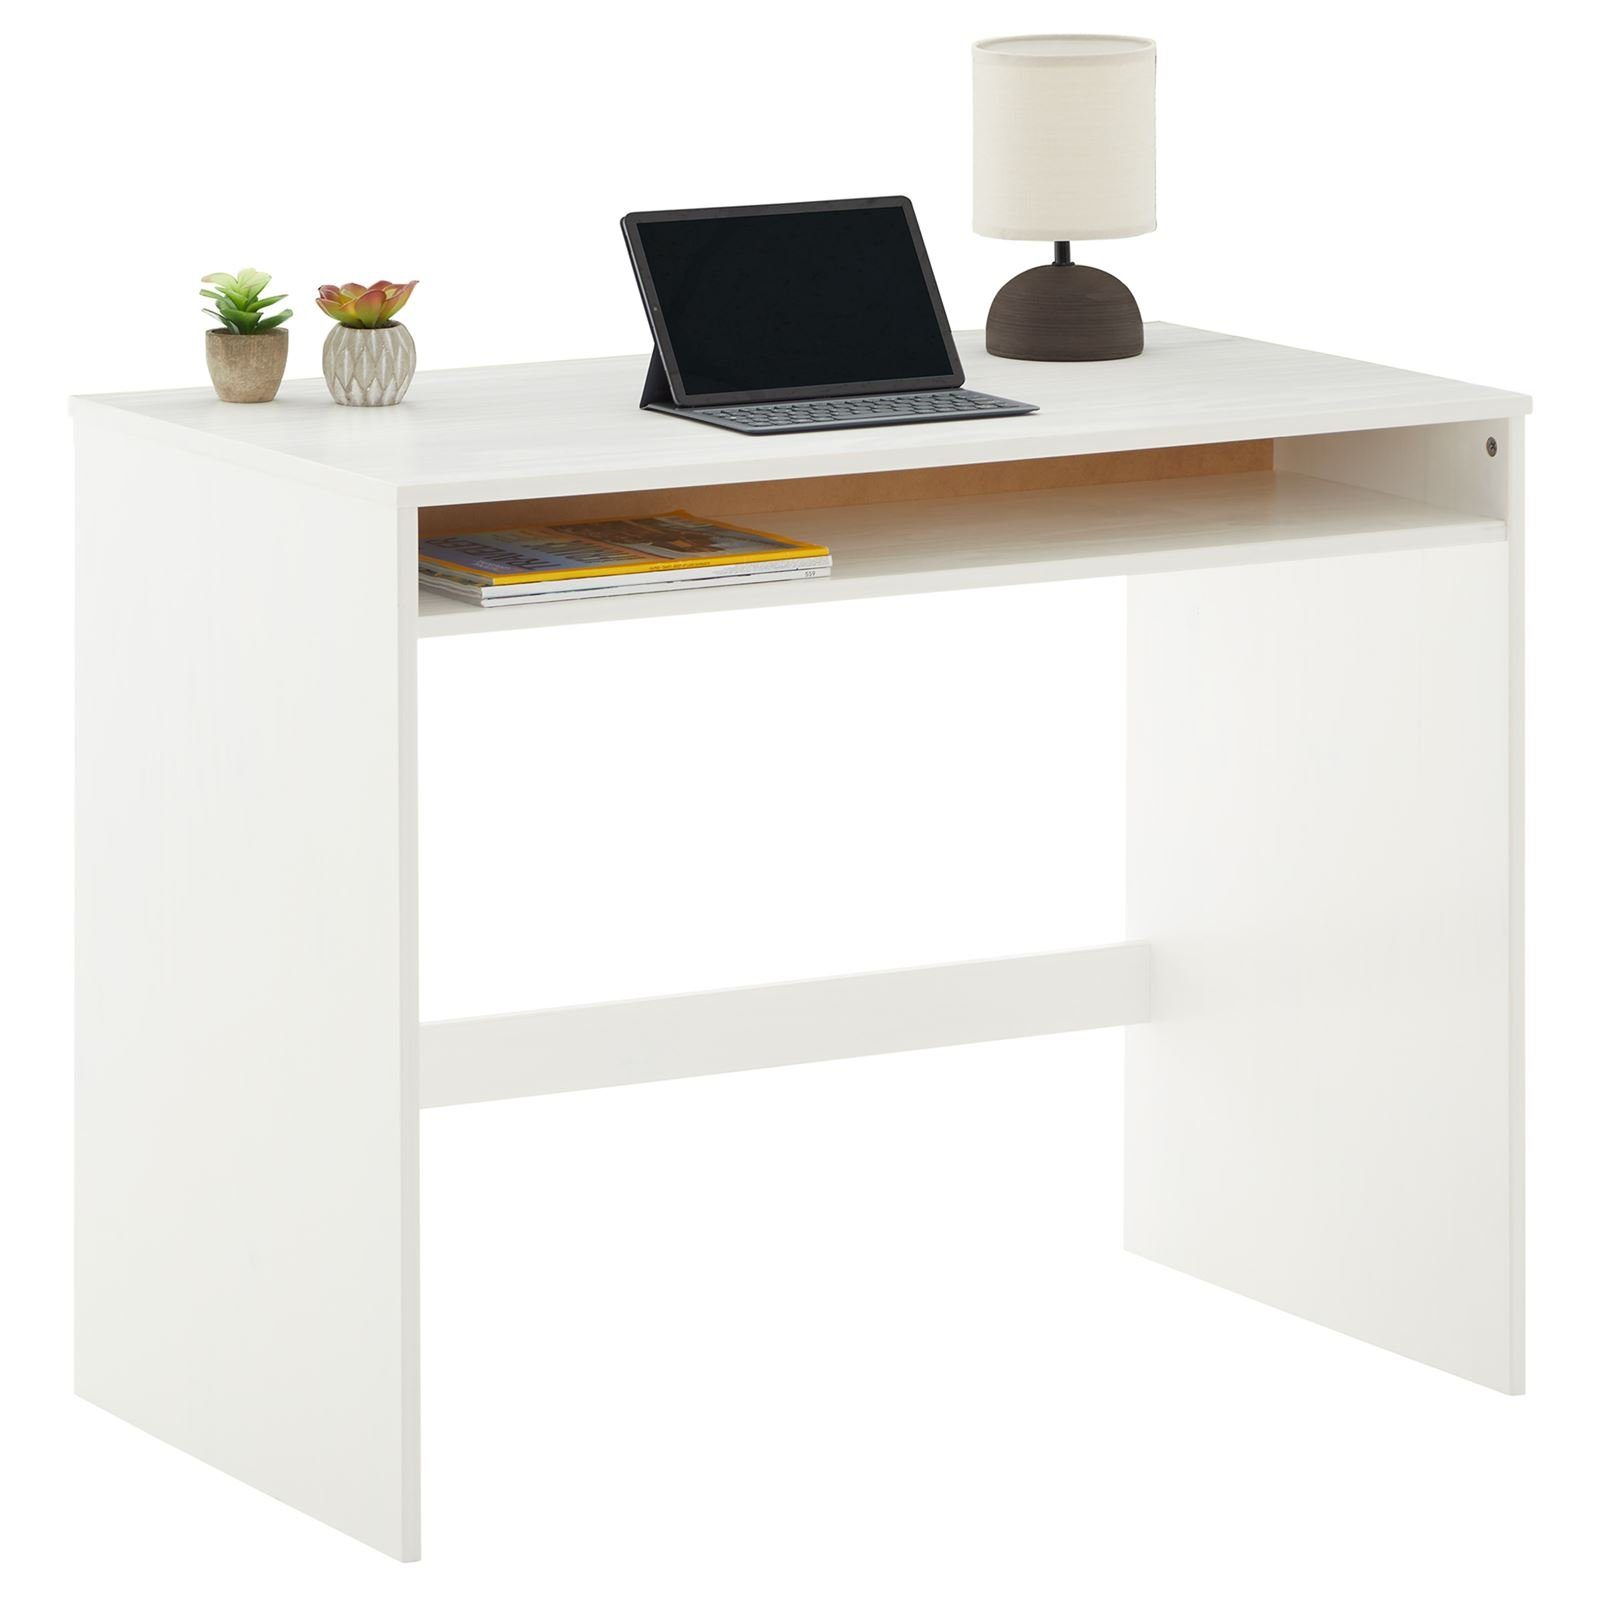 IDIMEX Schreibtisch ALICE, Schreibtisch Computertisch Bürotisch mit Ablagefach aus Kiefer massiv weiß